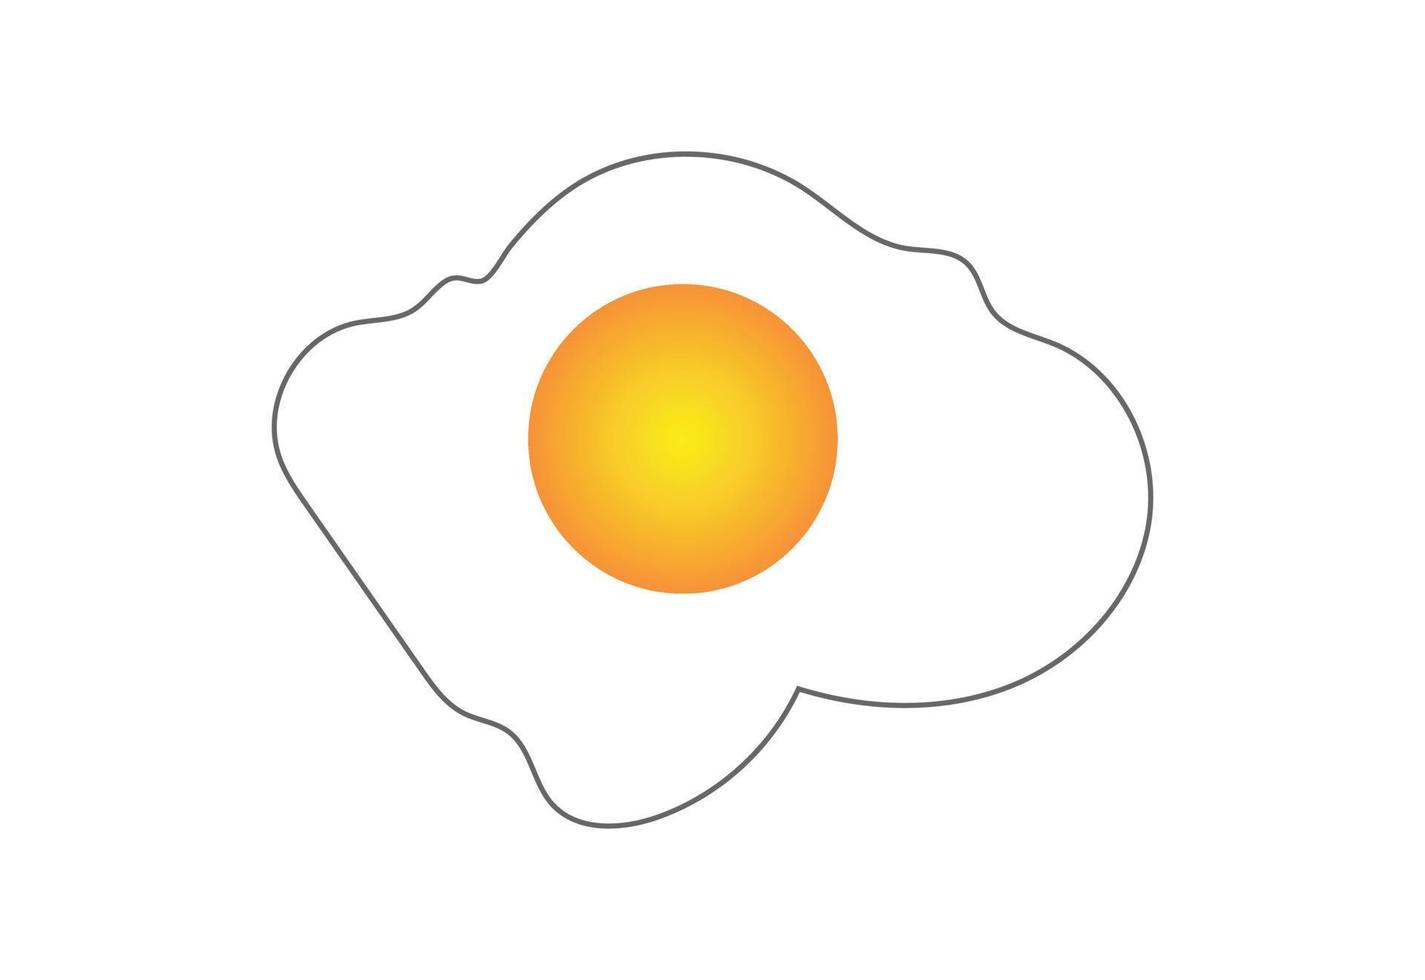 fresco uovo logo disegno, vettore design concetto